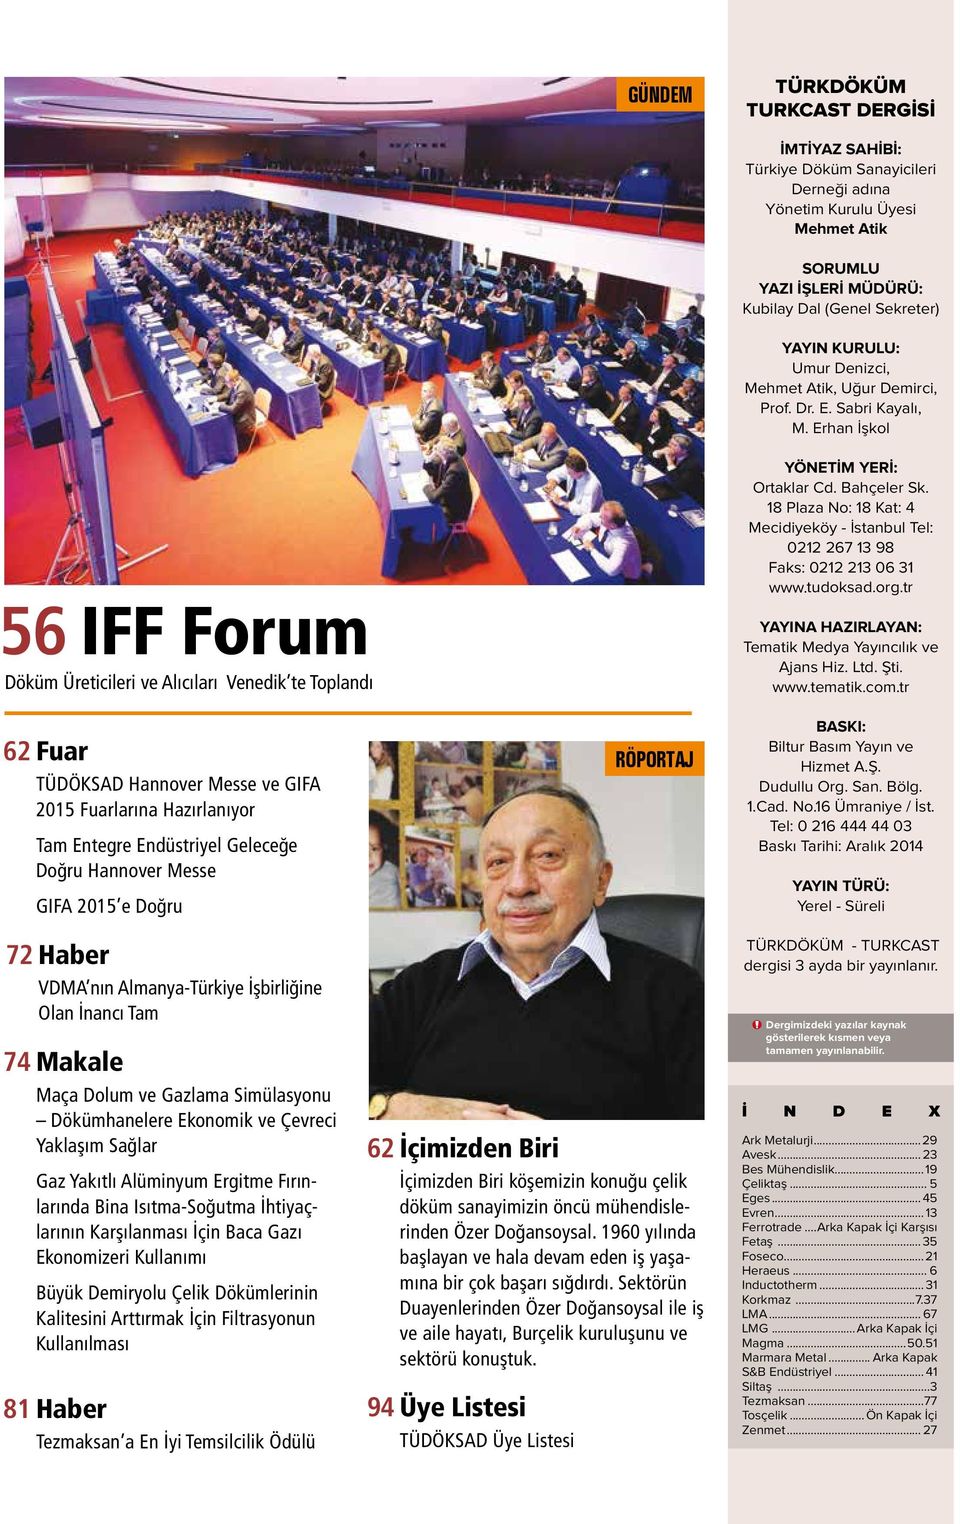 Erhan İşkol 56 IFF Forum Döküm Üreticileri ve Alıcıları Venedik te Toplandı 62 Fuar TÜDÖKSAD Hannover Messe ve GIFA 2015 Fuarlarına Hazırlanıyor Tam Entegre Endüstriyel Geleceğe Doğru Hannover Messe